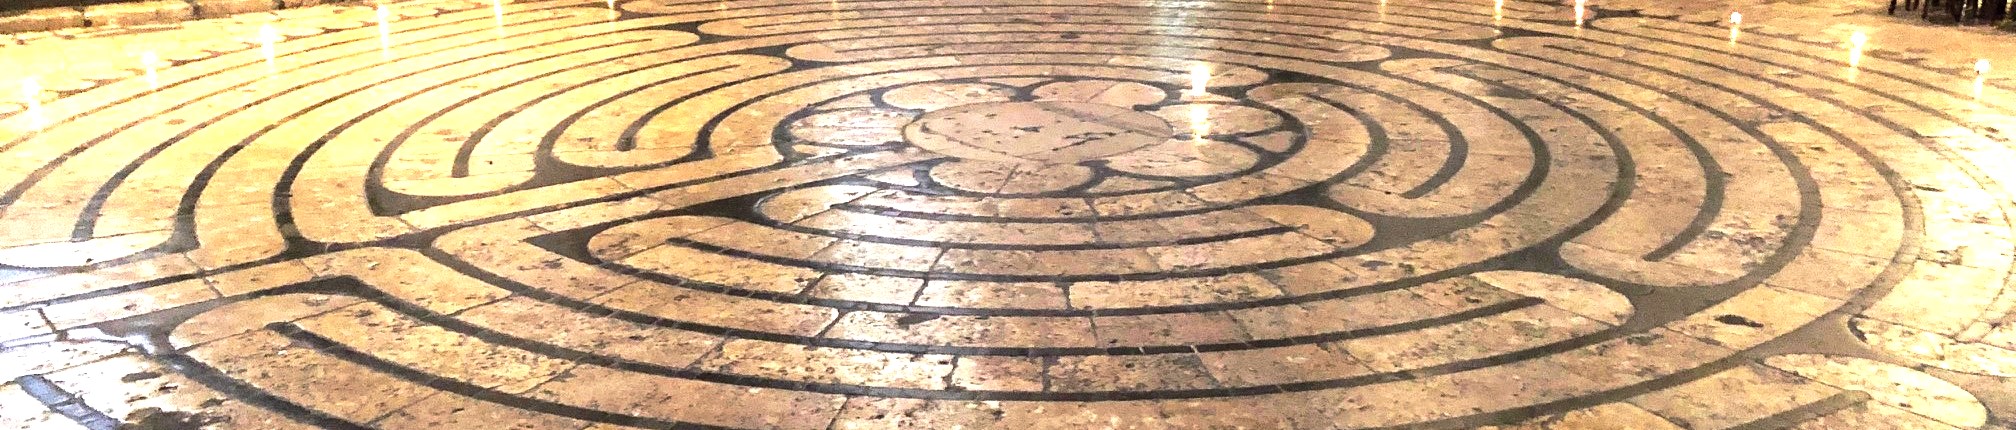 Das Labyrinth von Chartres